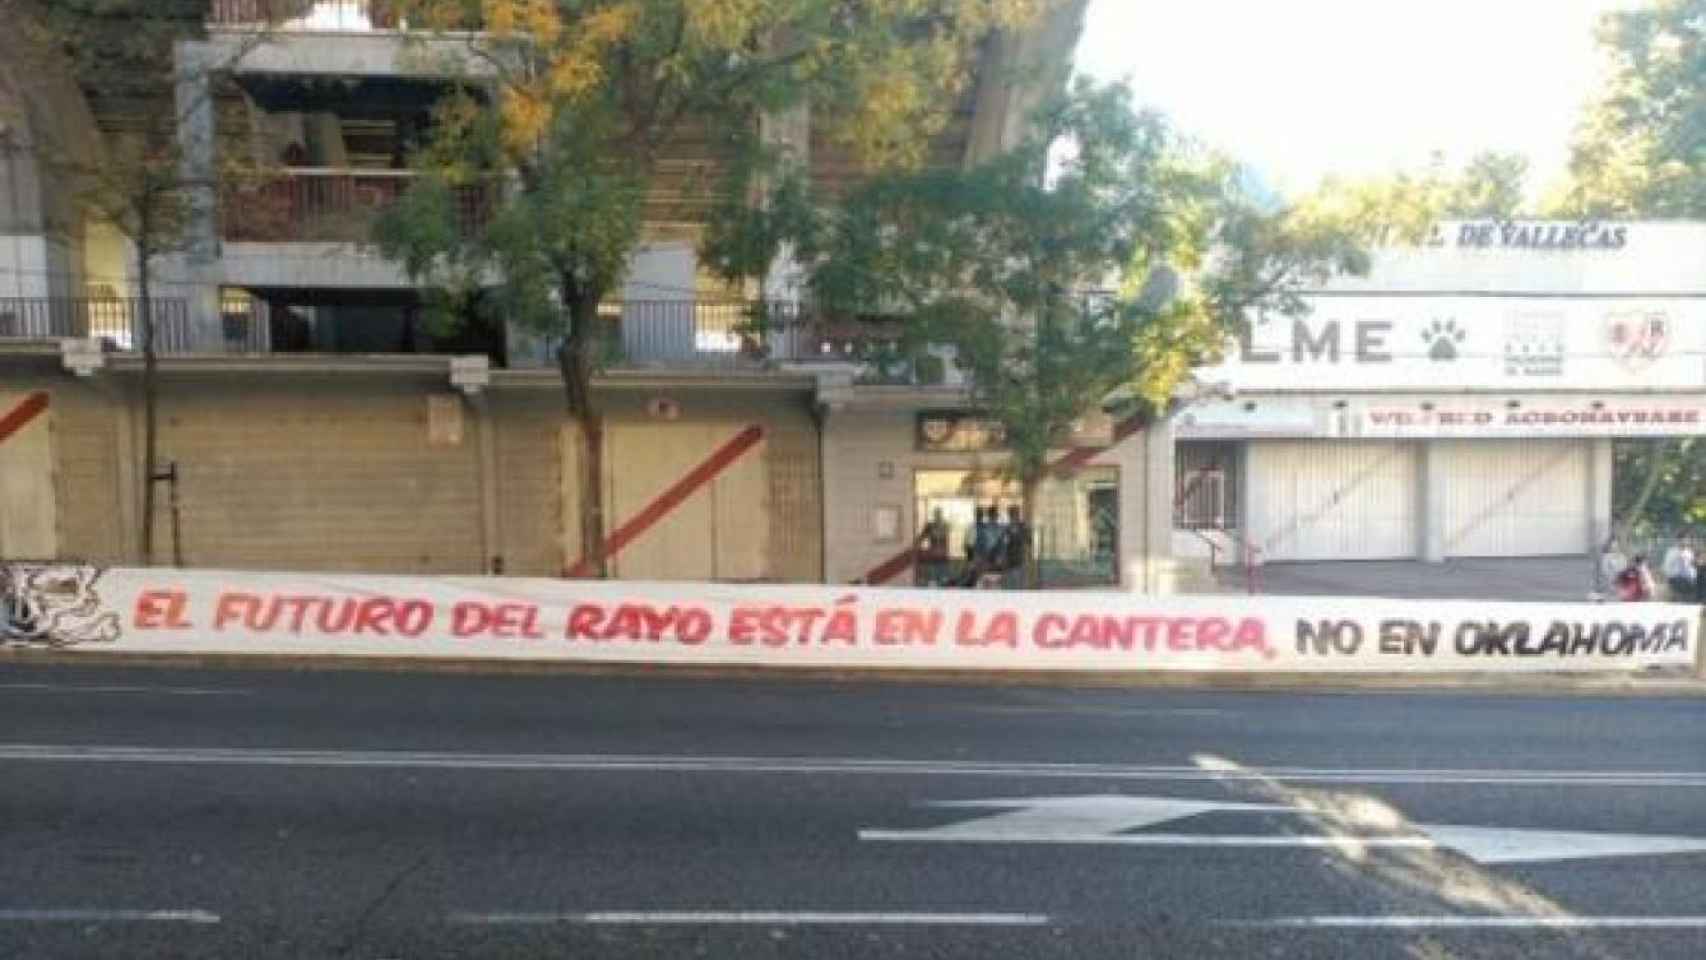 Protestas en Vallecas por la inversión en el Rayo OKC.